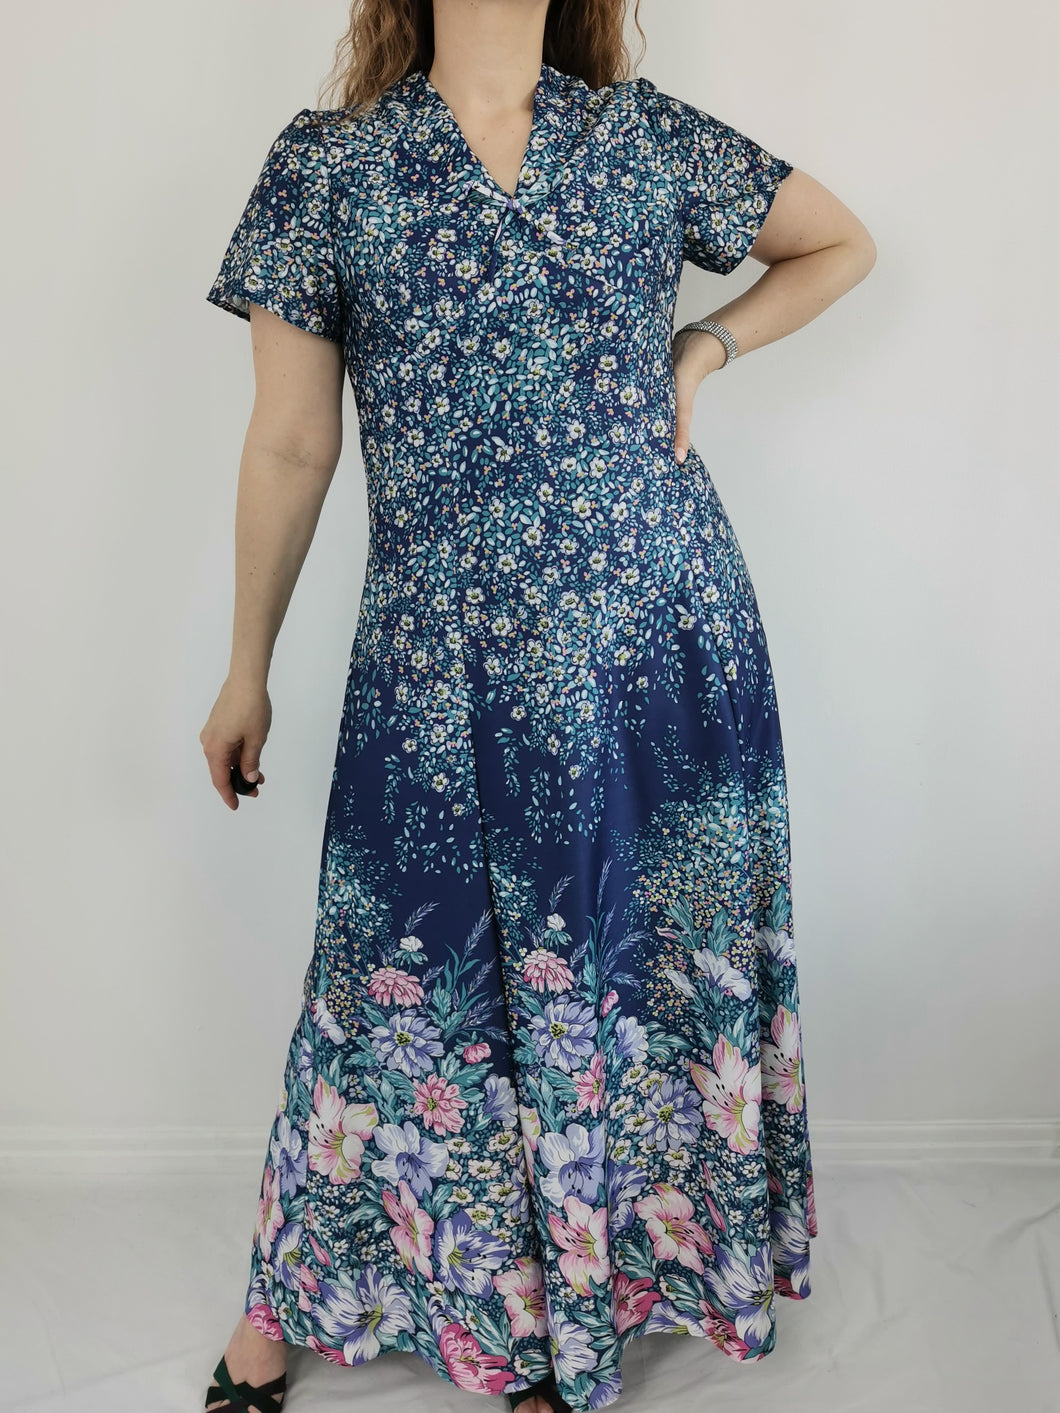 Vintage 70s floral maxi dress